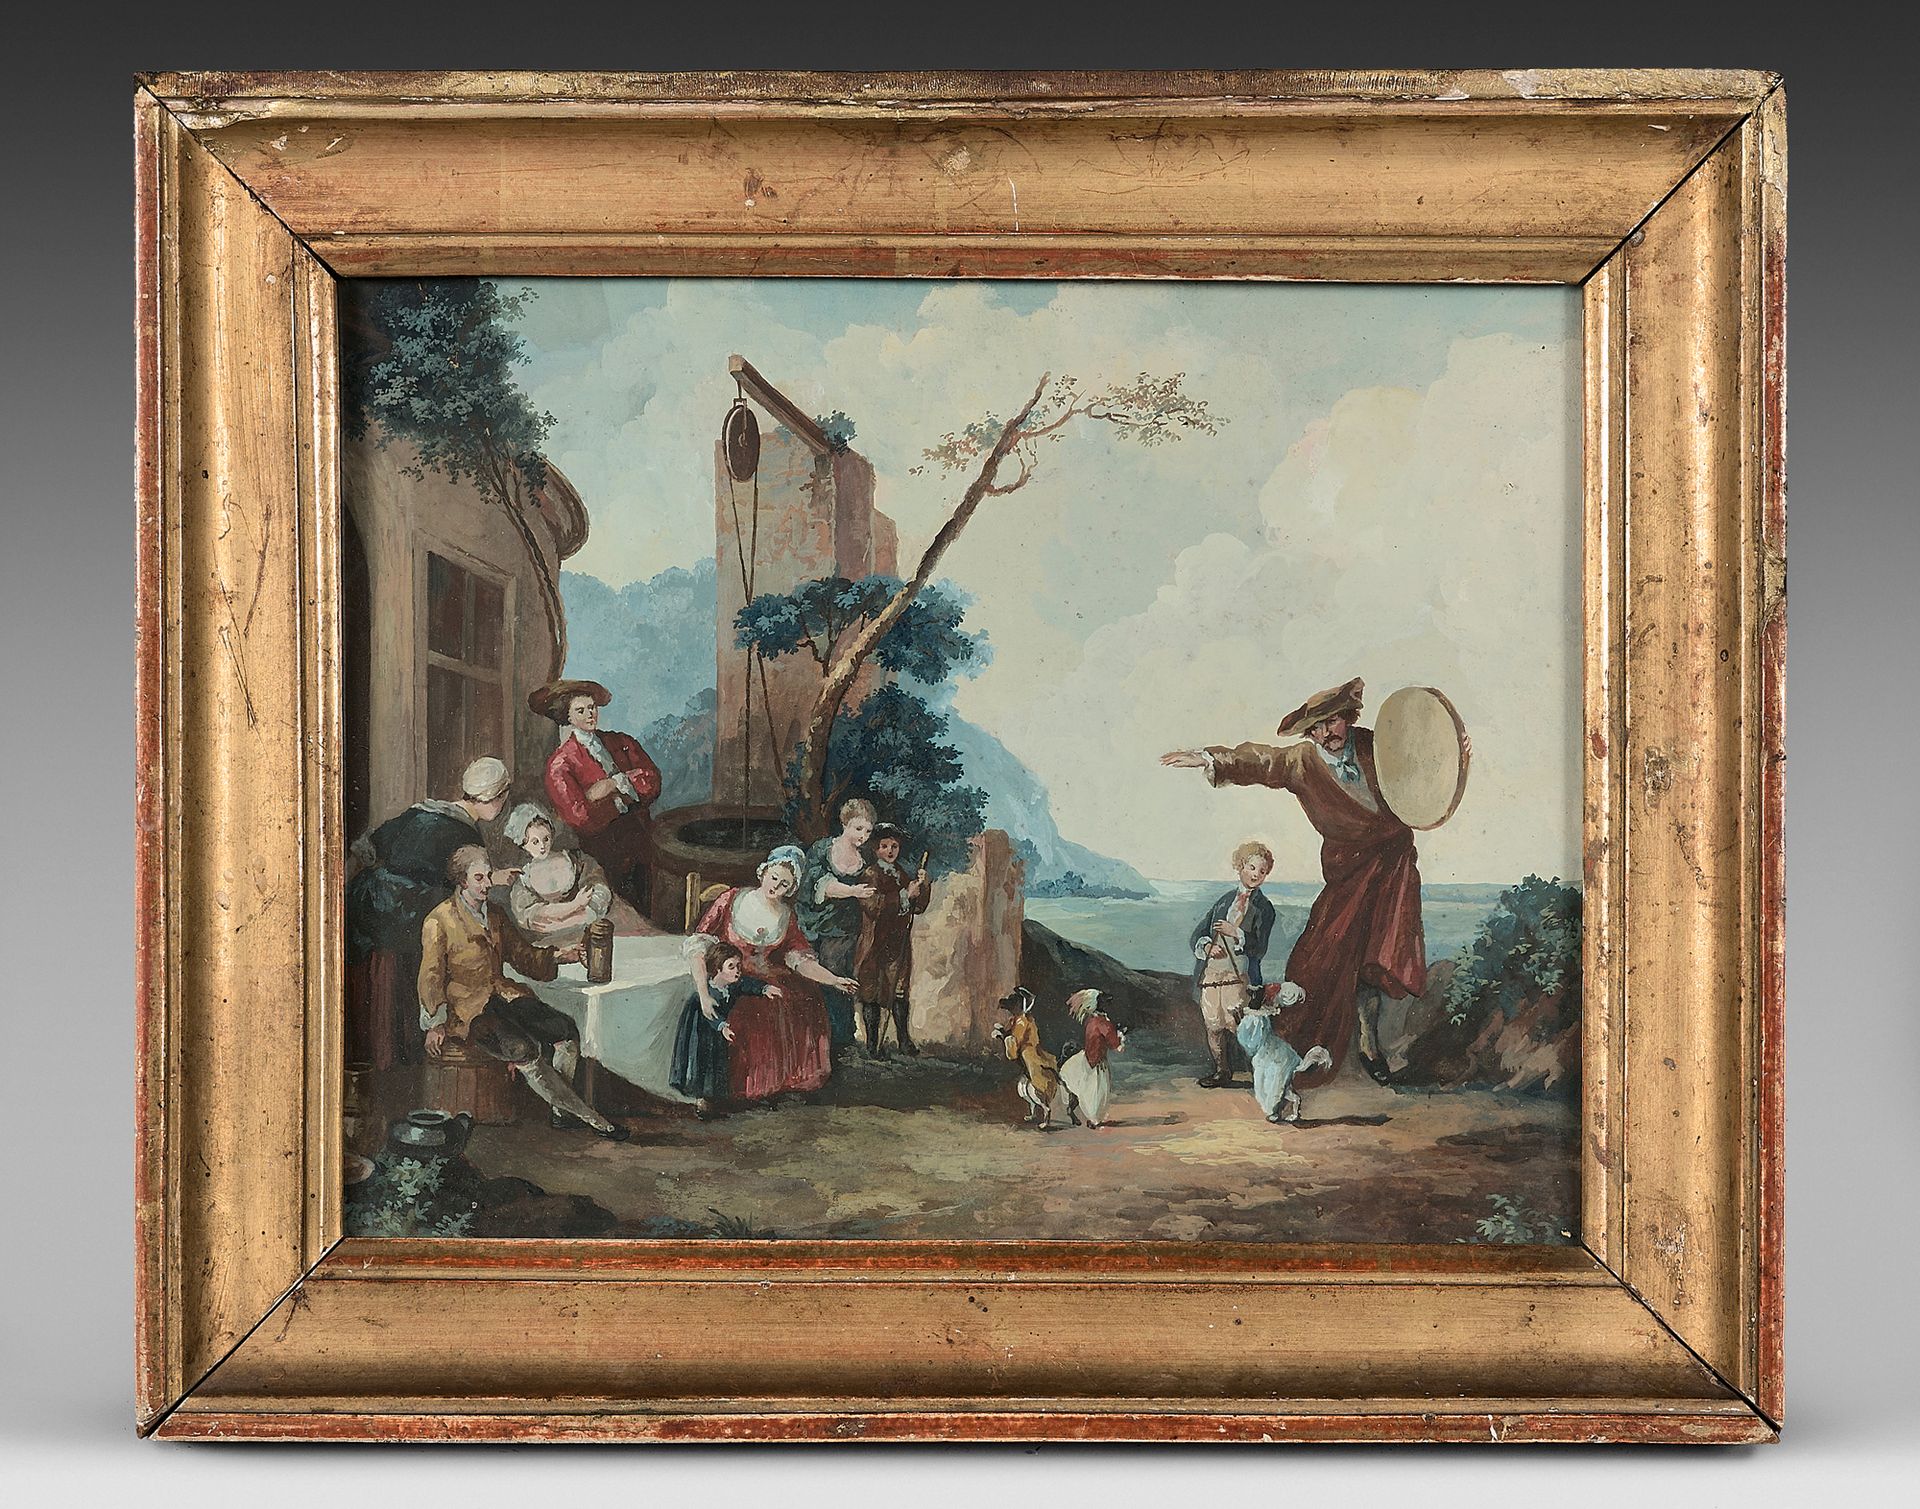 École ESPAGNOLE de la fin du XVIIIe siècle 跳舞的狗--训熊师
一对水粉画。
19 x 24厘米